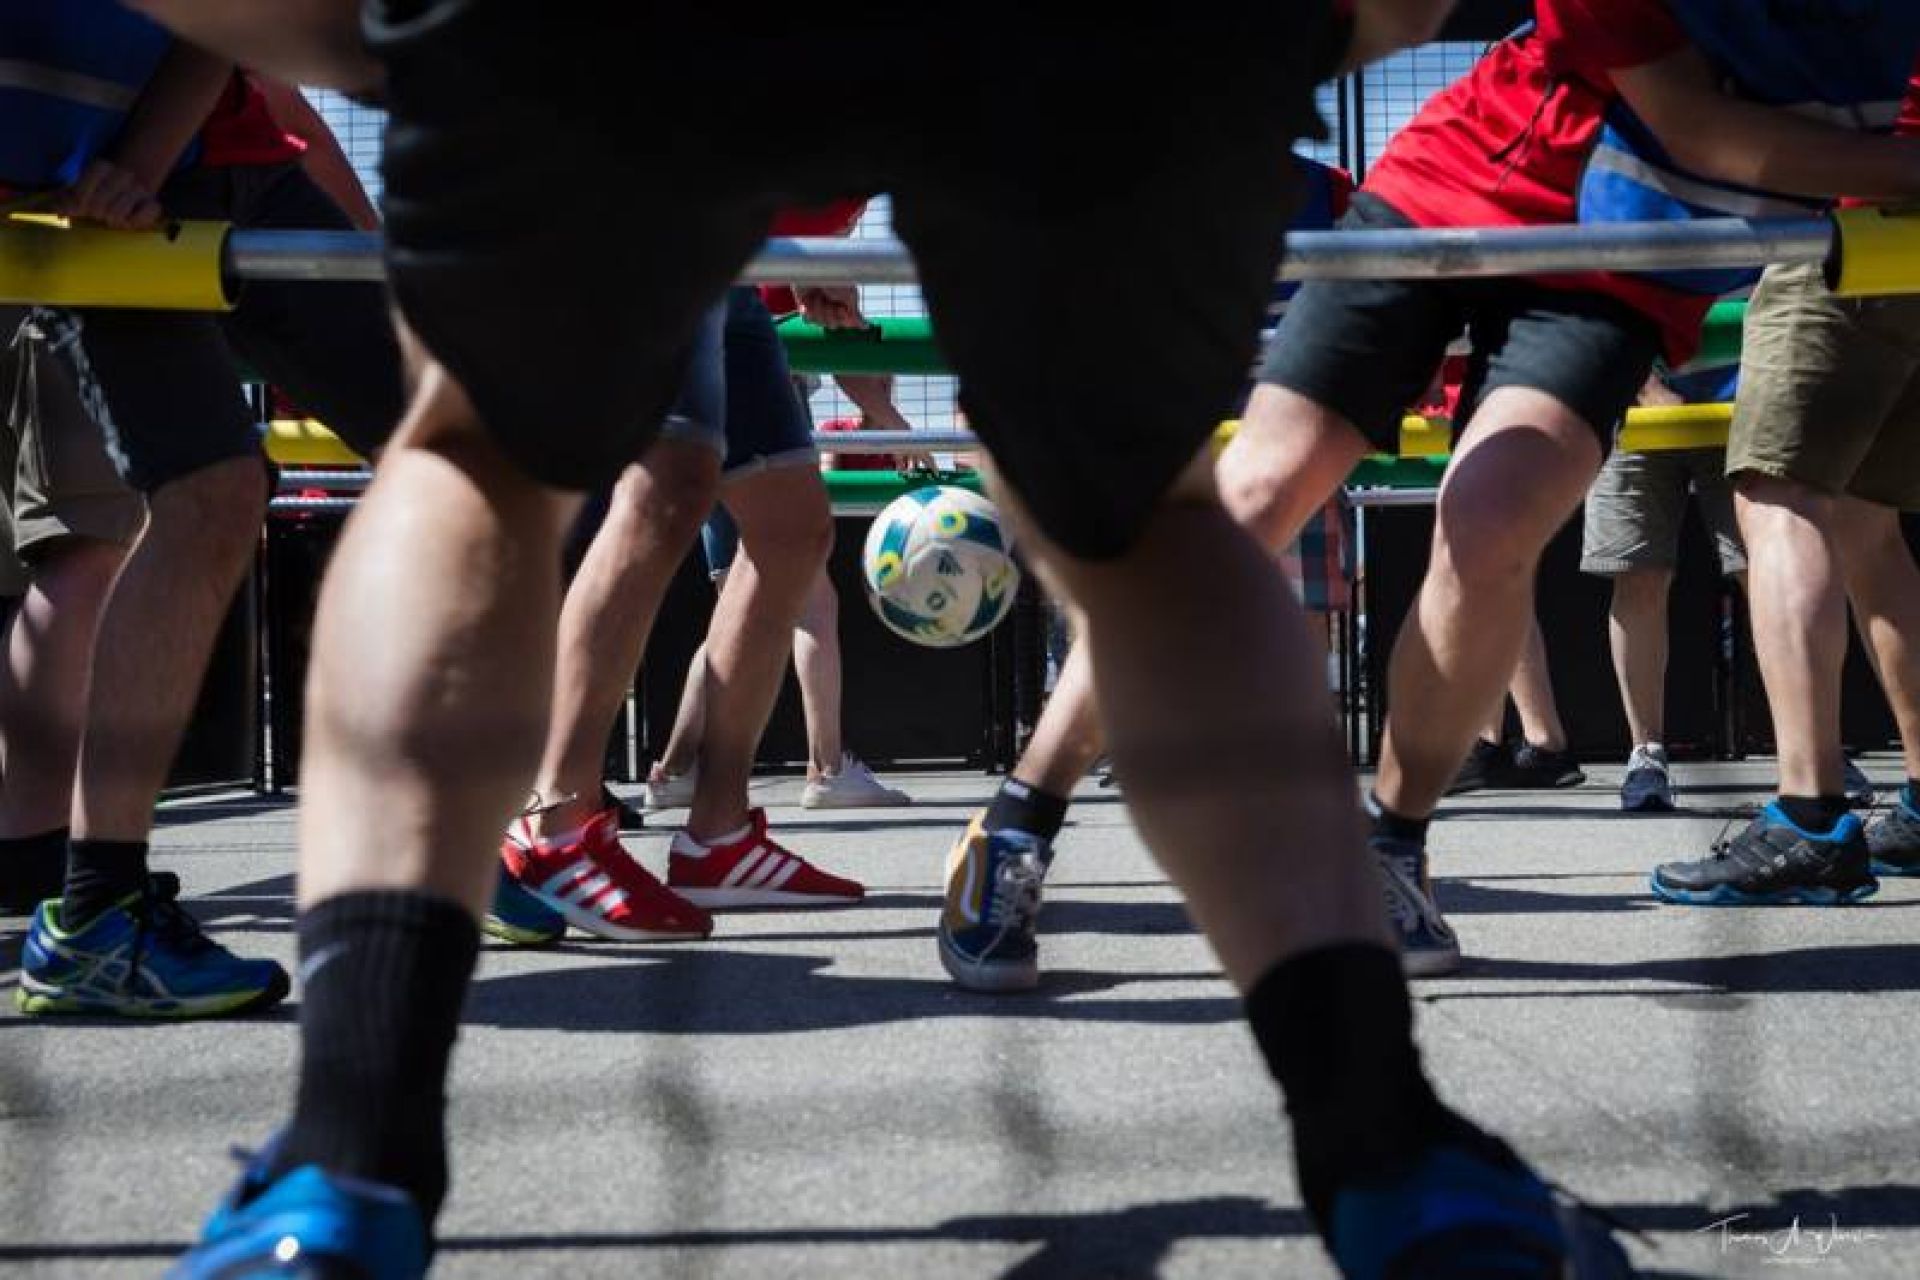 Le baby foot humain se joue avec un vrai ballon de football et des chaussures de sport adaptées